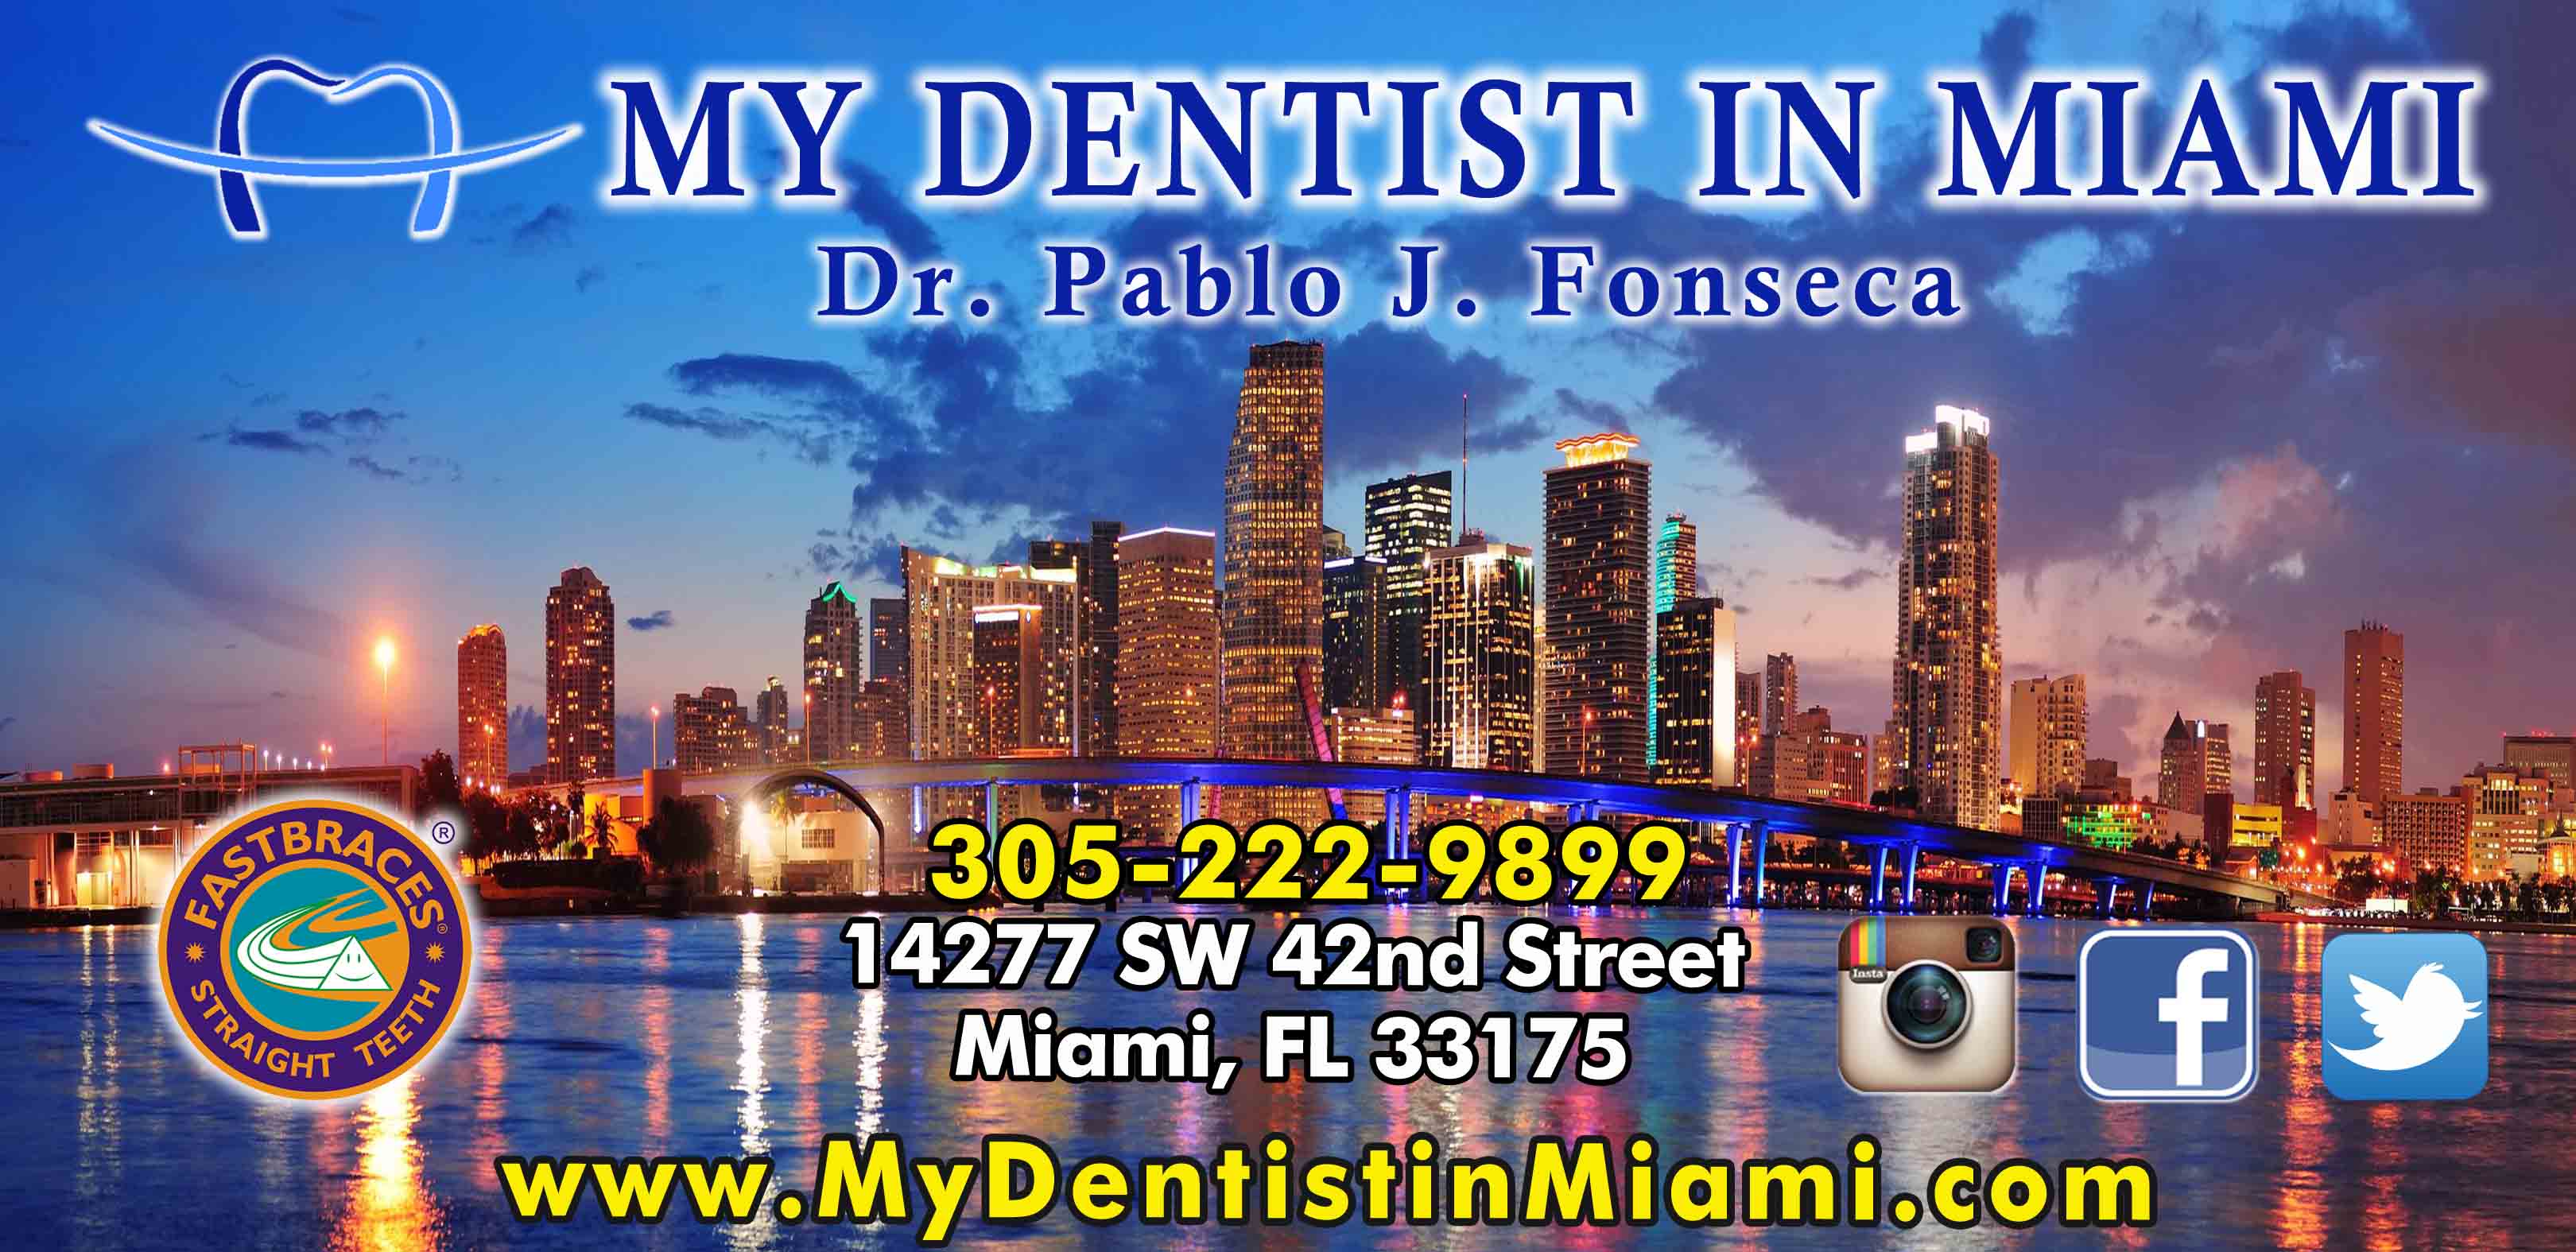 My Dentist In Miami